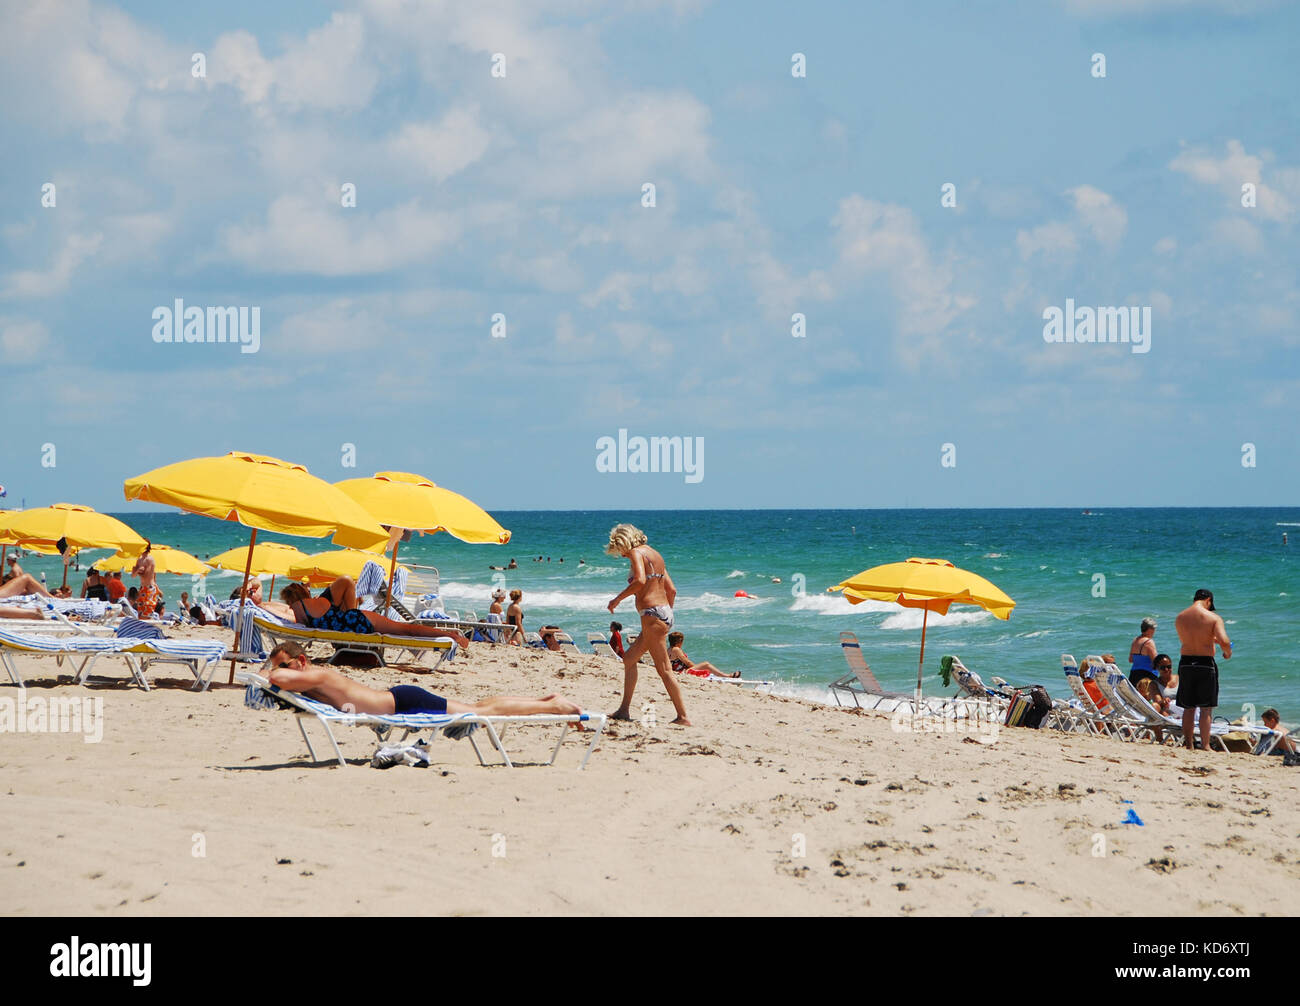 Fort Lauderdale, USA - 9 juin 2007 : journée bien remplie sur la plage de Fort Lauderdale, Floride. Les touristes visiter la Floride en nombres élevés pendant la haute saison Banque D'Images